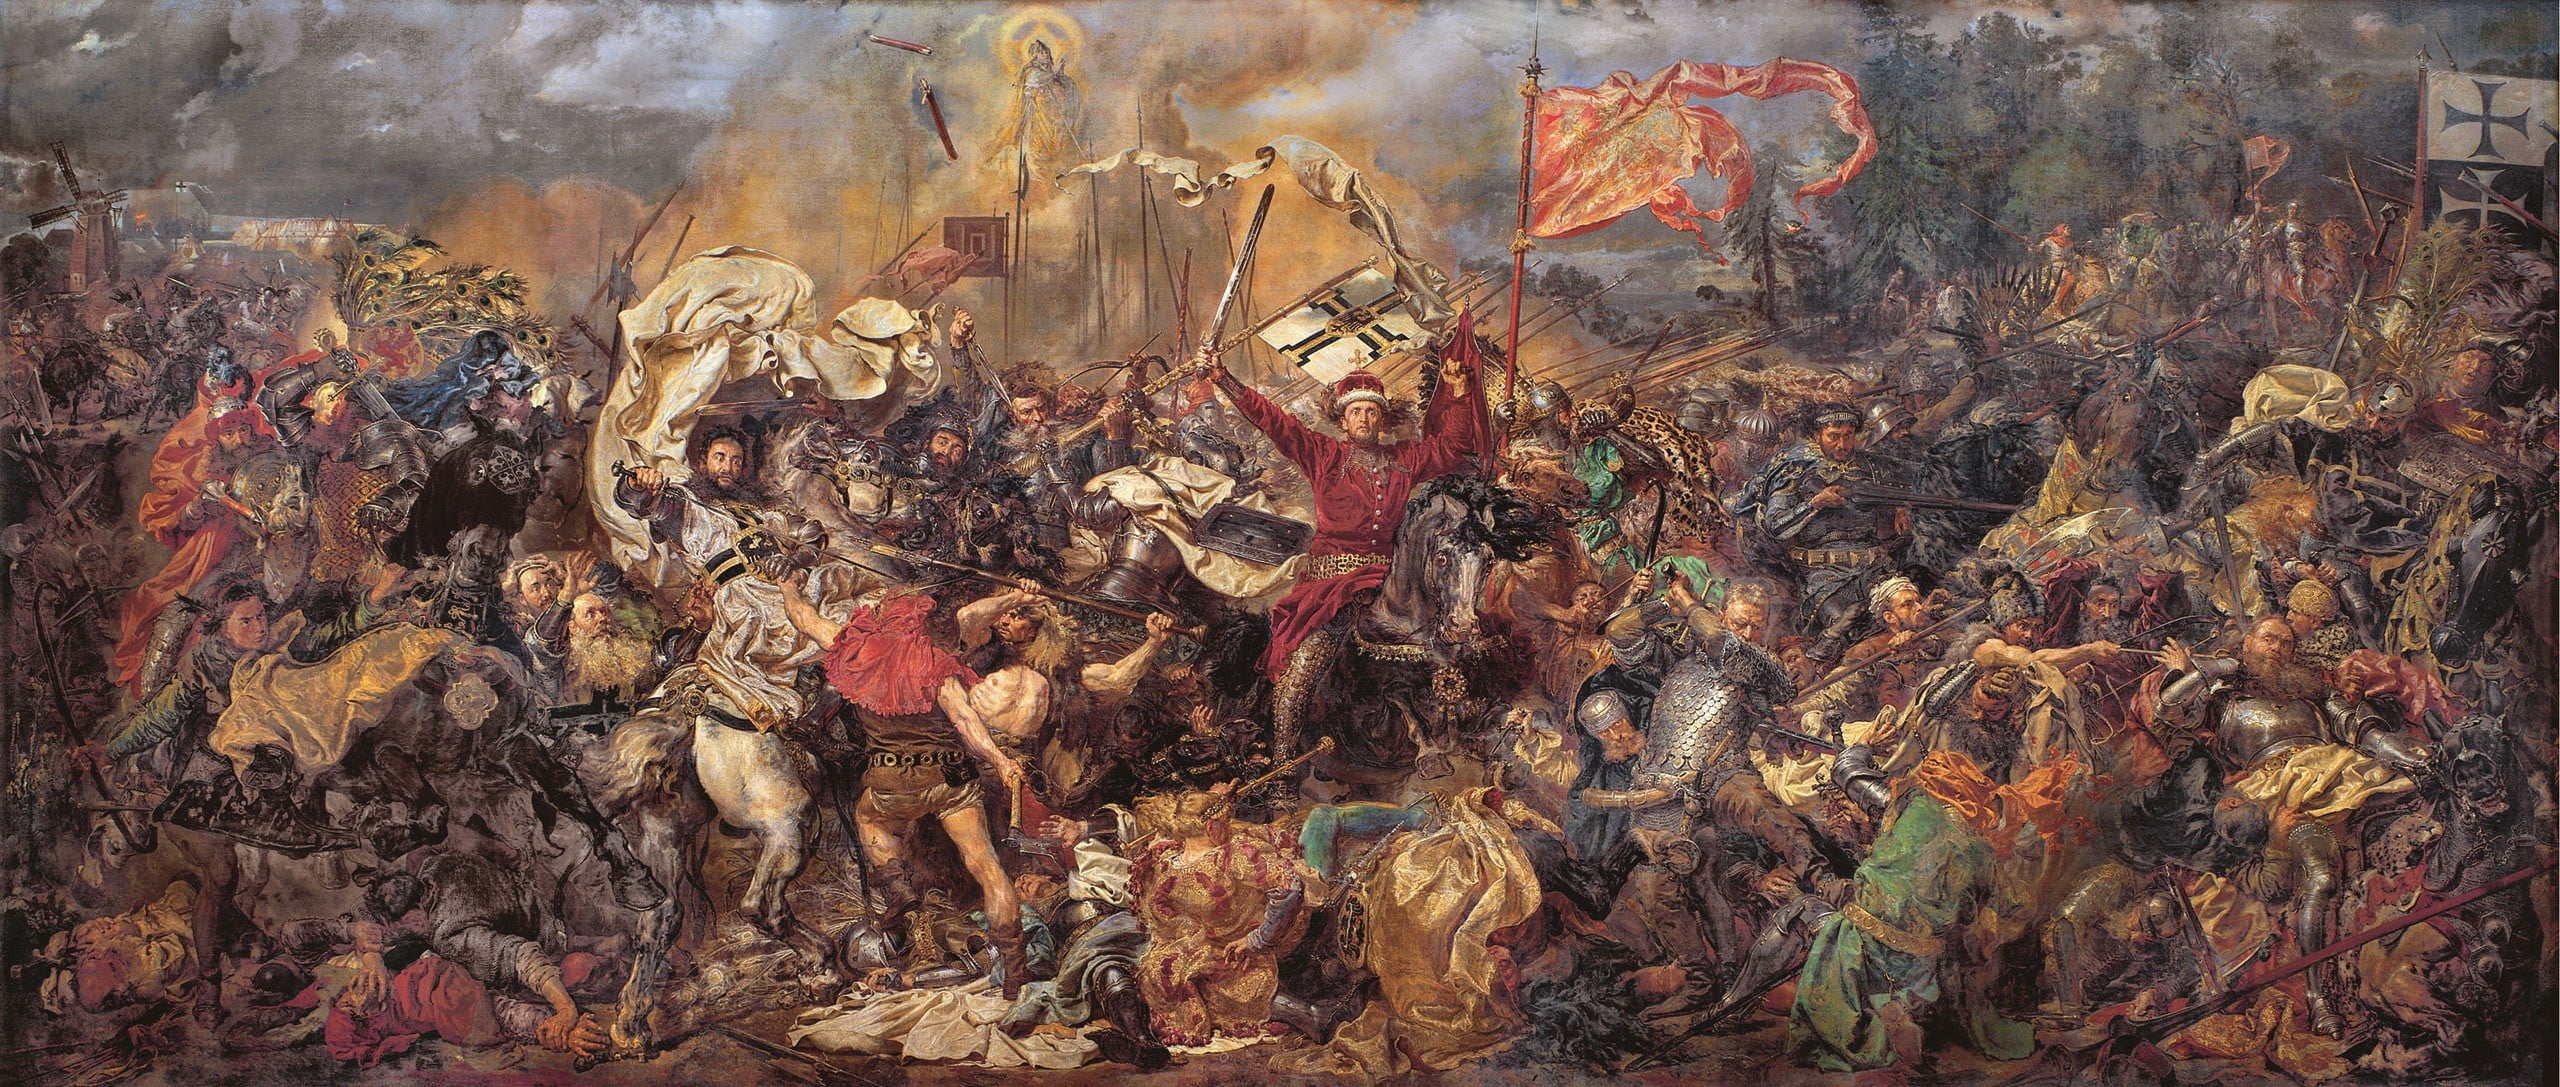 War painting, Zalgiris, battlefields, Battle of Grunwald, classic art